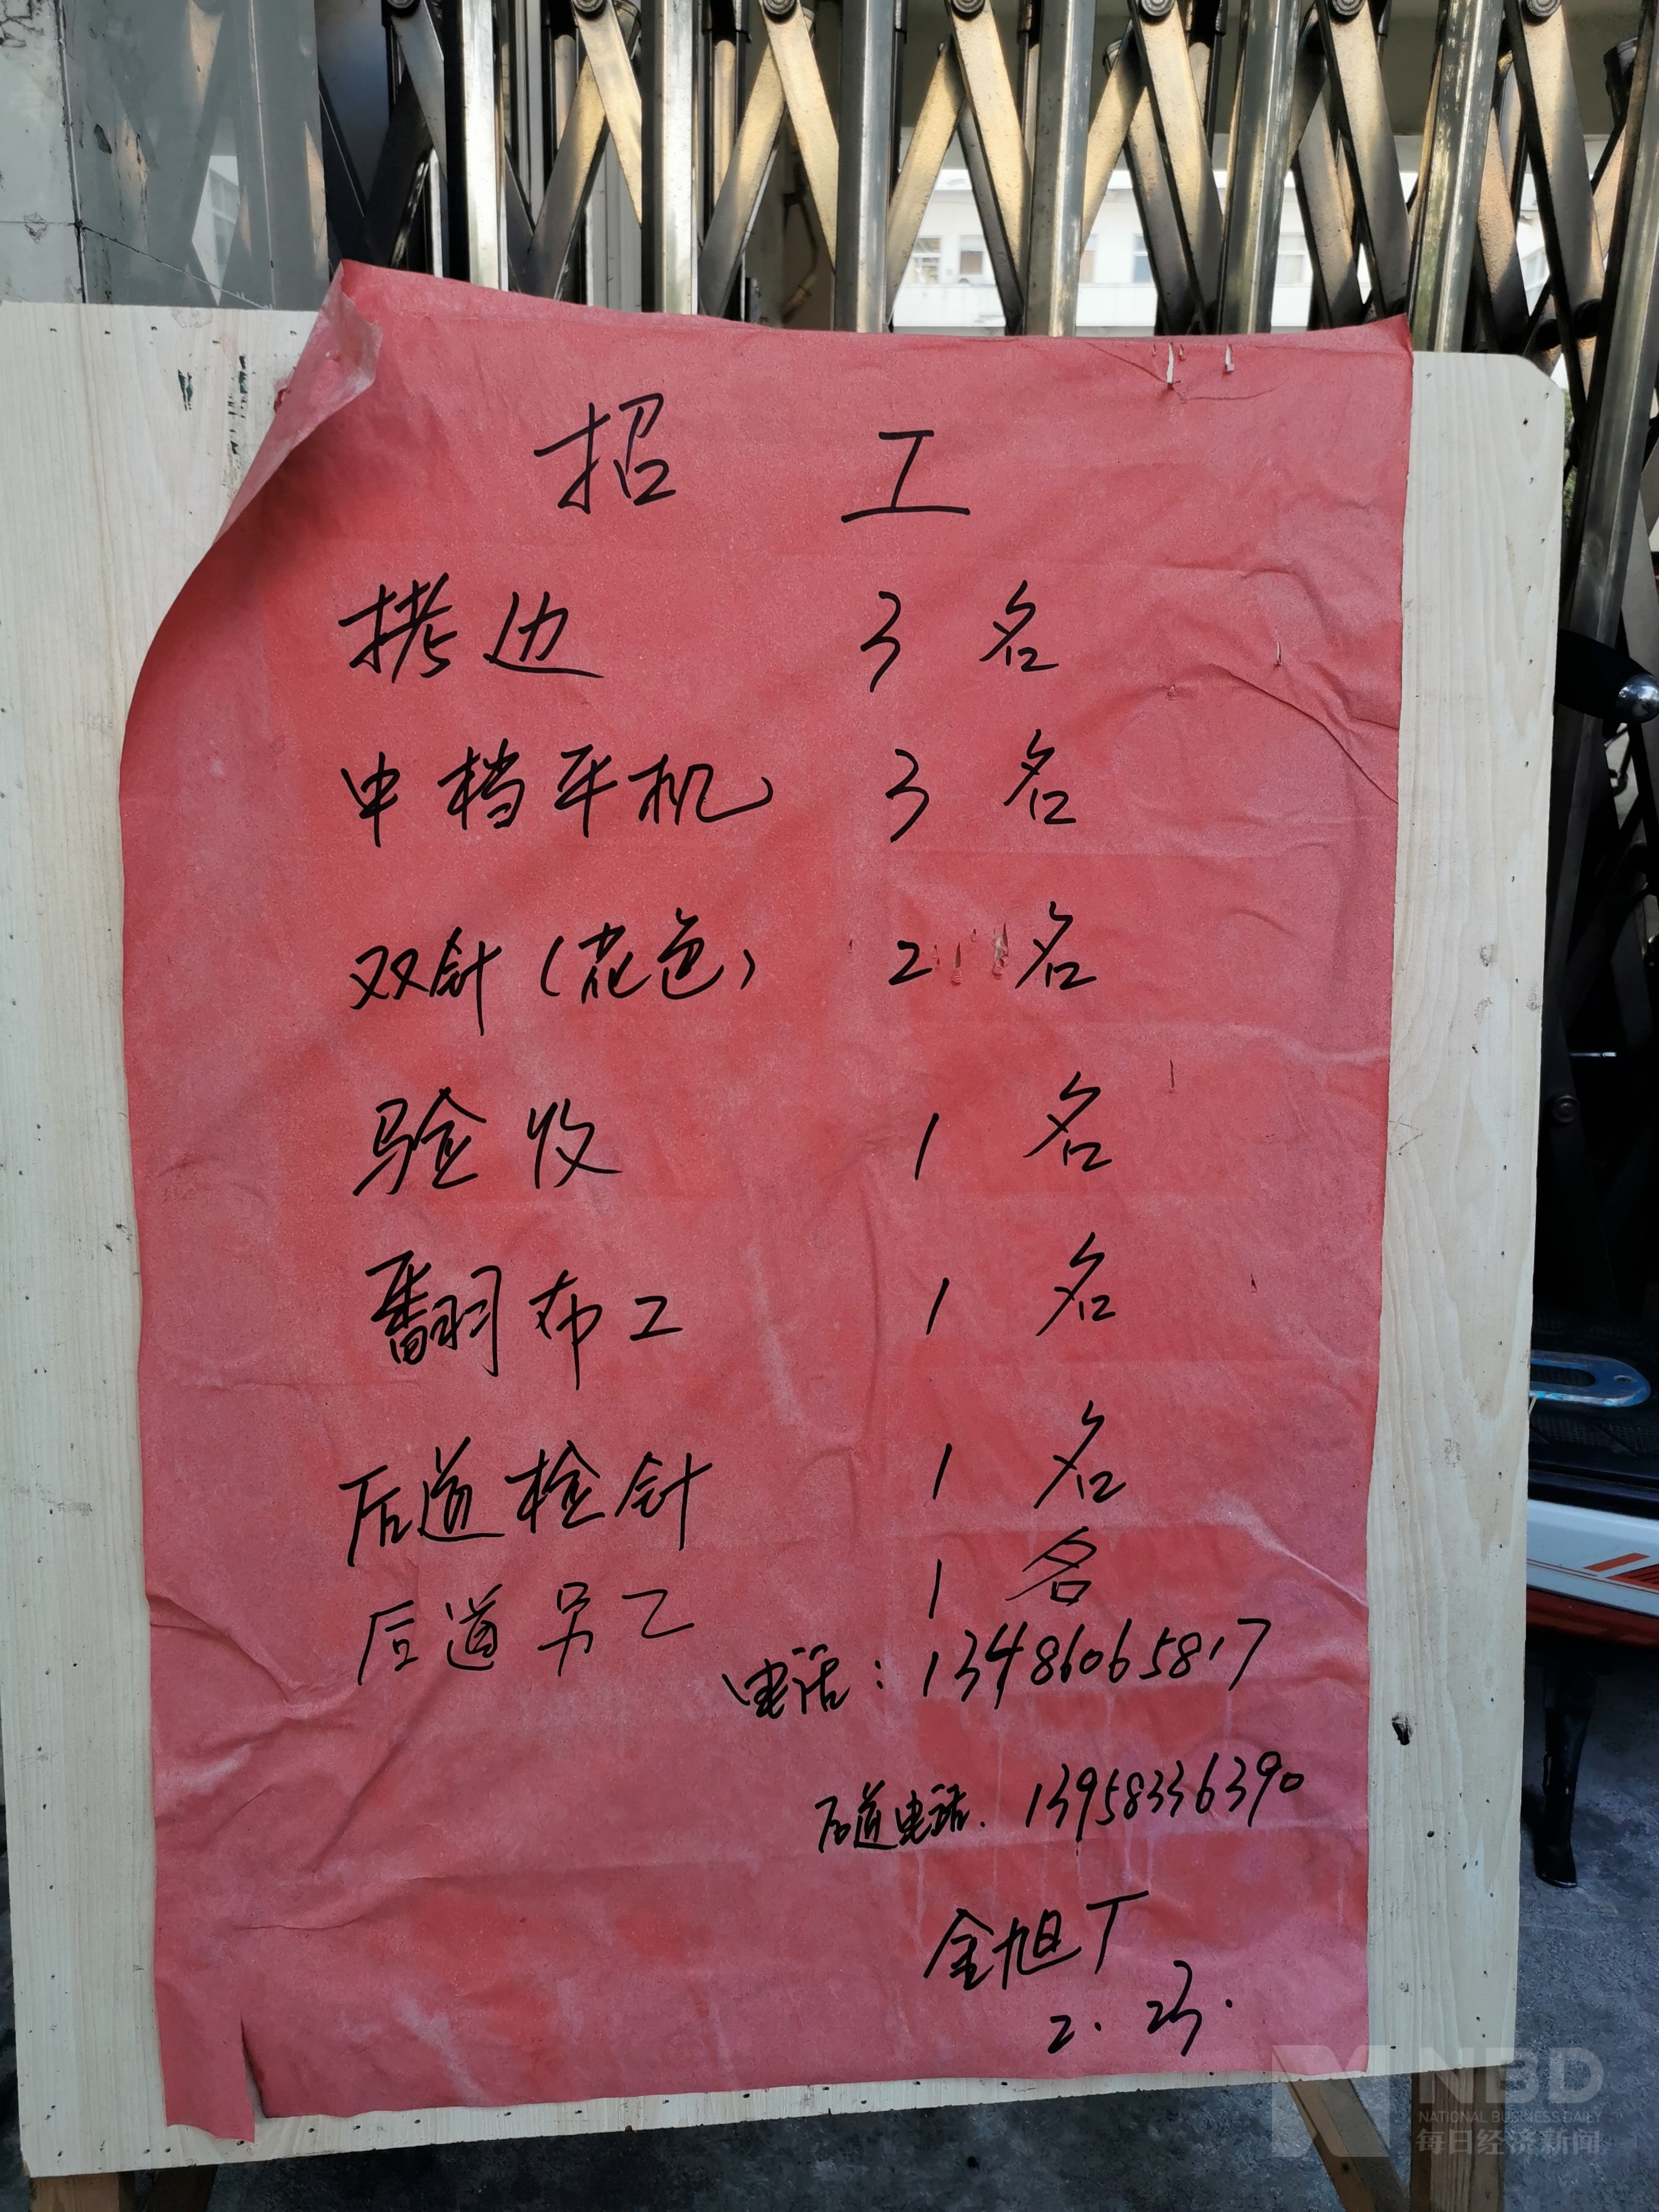 象山爵溪镇不少针织厂贴出了招工告示 图片来源:每经记者 叶晓丹 摄